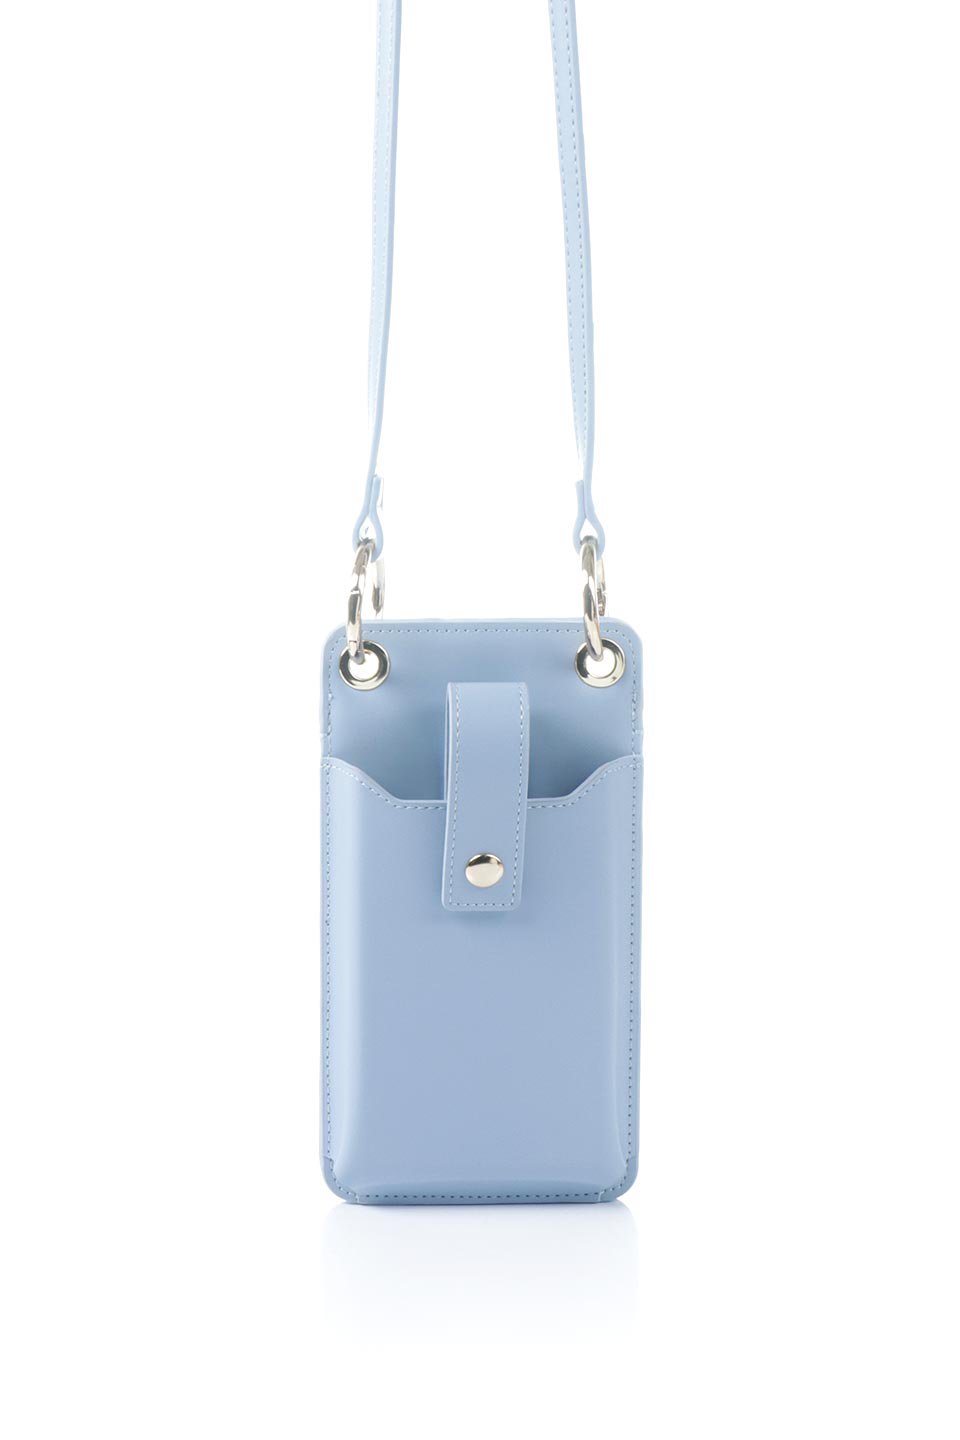 meliebiancoのTina(Sky)財布機能付き・スマホショルダー/海外ファッション好きにオススメのインポートバッグとかばん、MelieBianco（メリービアンコ）のバッグやその他。斜め掛けが便利なお財布としても使えるスマホショルダー。iPhone13ProMaxまでの大きさのスマホに対応するケースに、ファスナー付きのコインポケットと10個のカードスロットがついています。